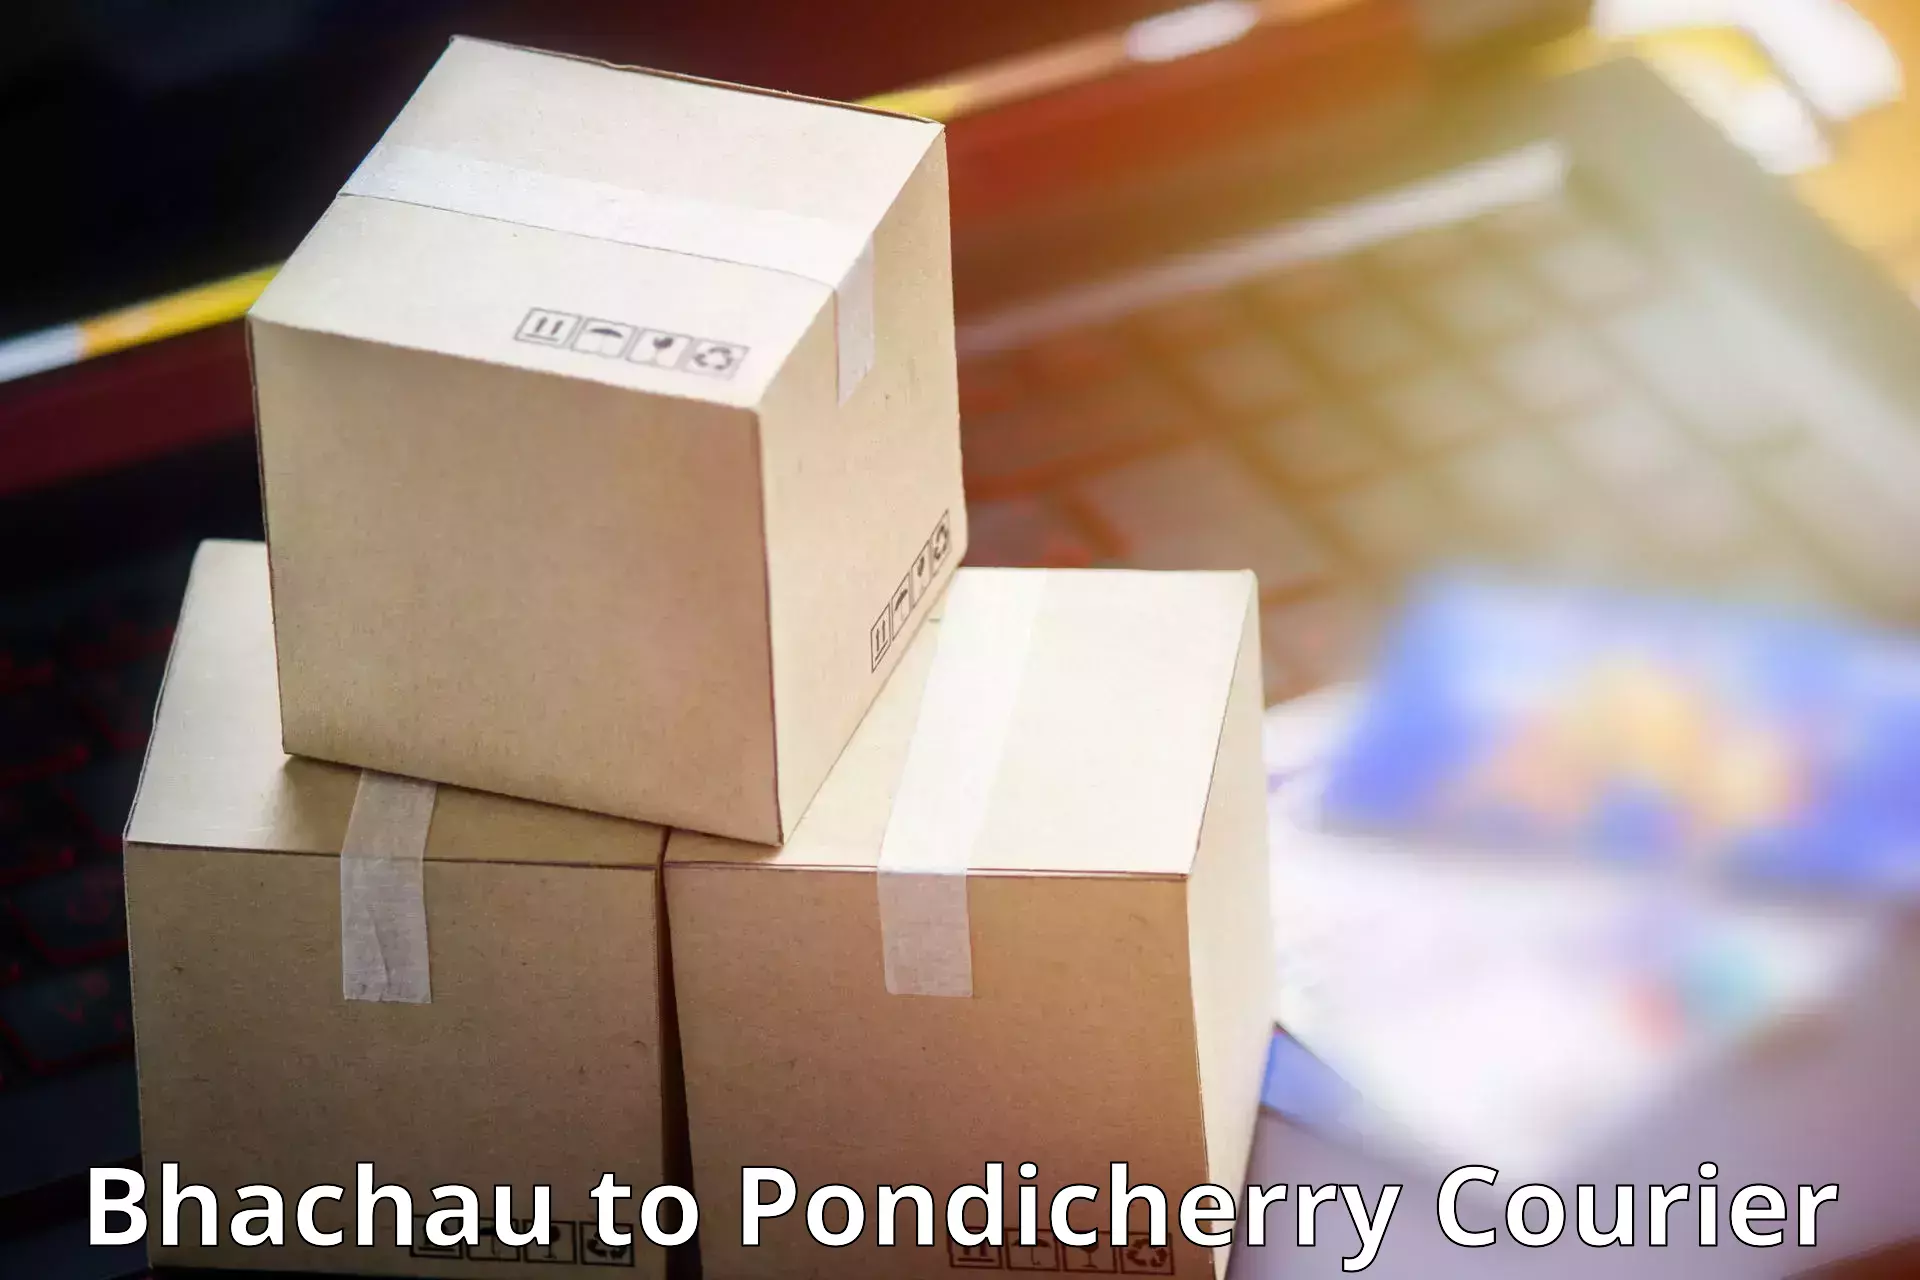 Flexible parcel services Bhachau to Pondicherry